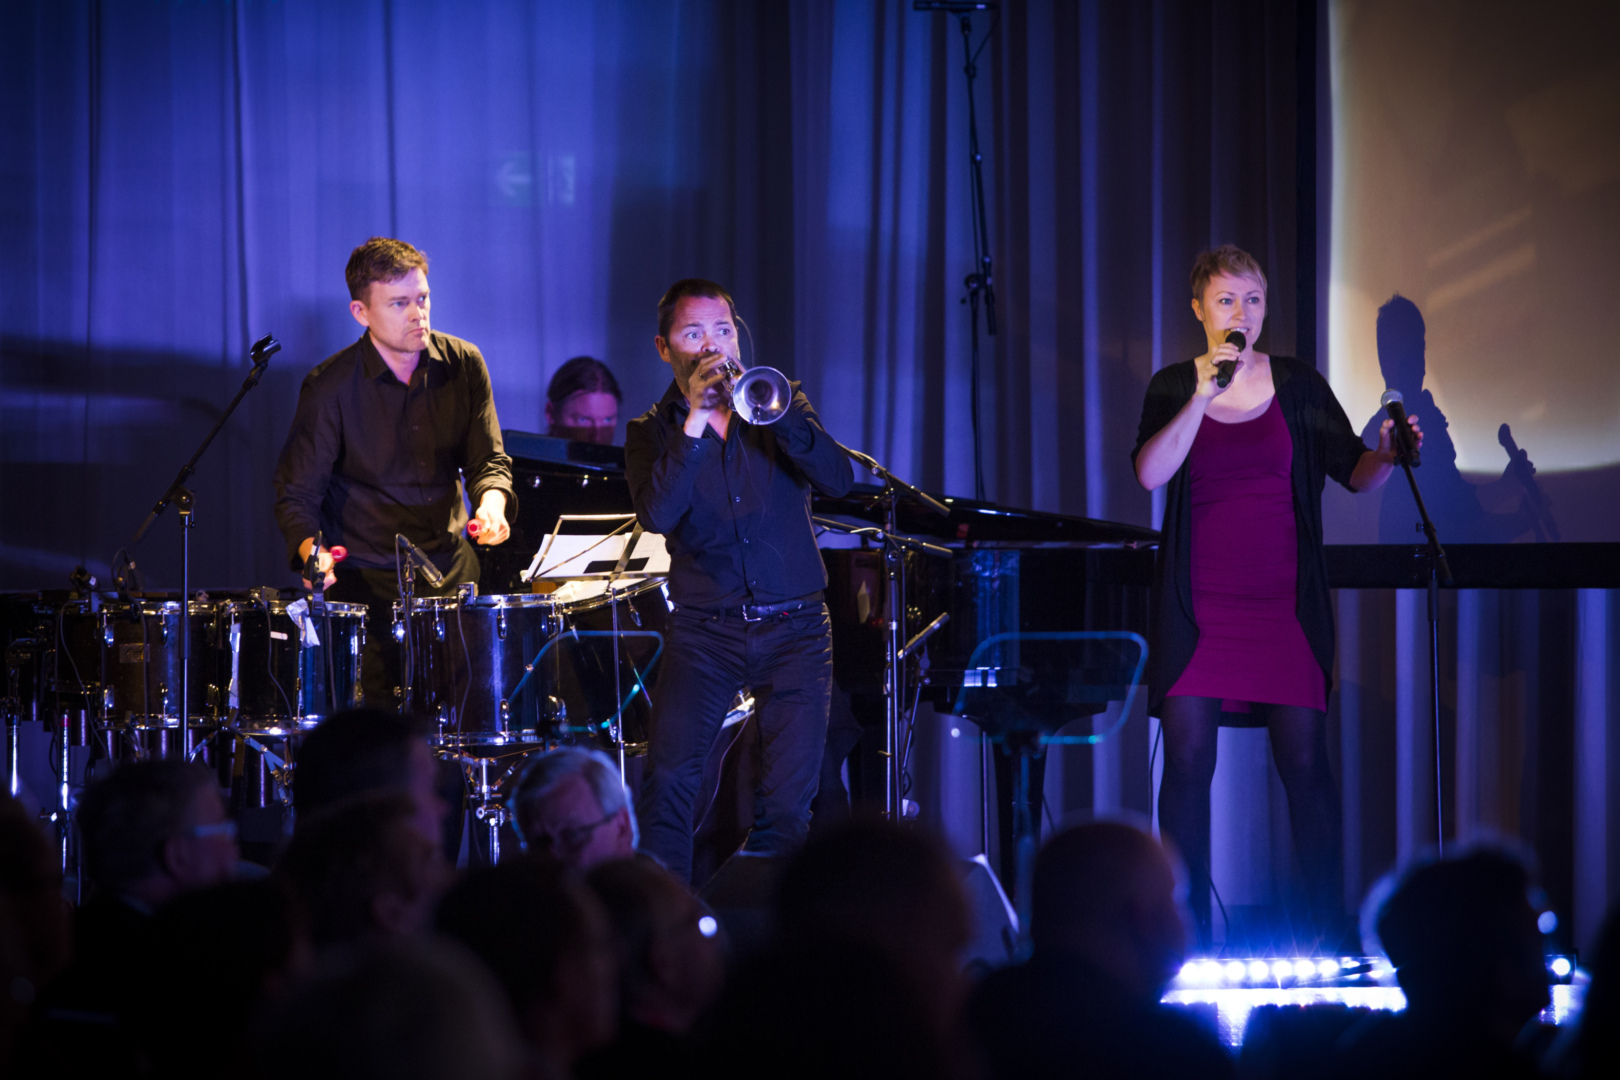 Musikk: LO-kongressen åpnet med musikk og videomontasje med fra venstre slagverker Eirik Raude, trompetist Arve Henriksen og vokalist Live Maria Roggen. Bak skimtes Bjørge Verbaan ved pianoet.